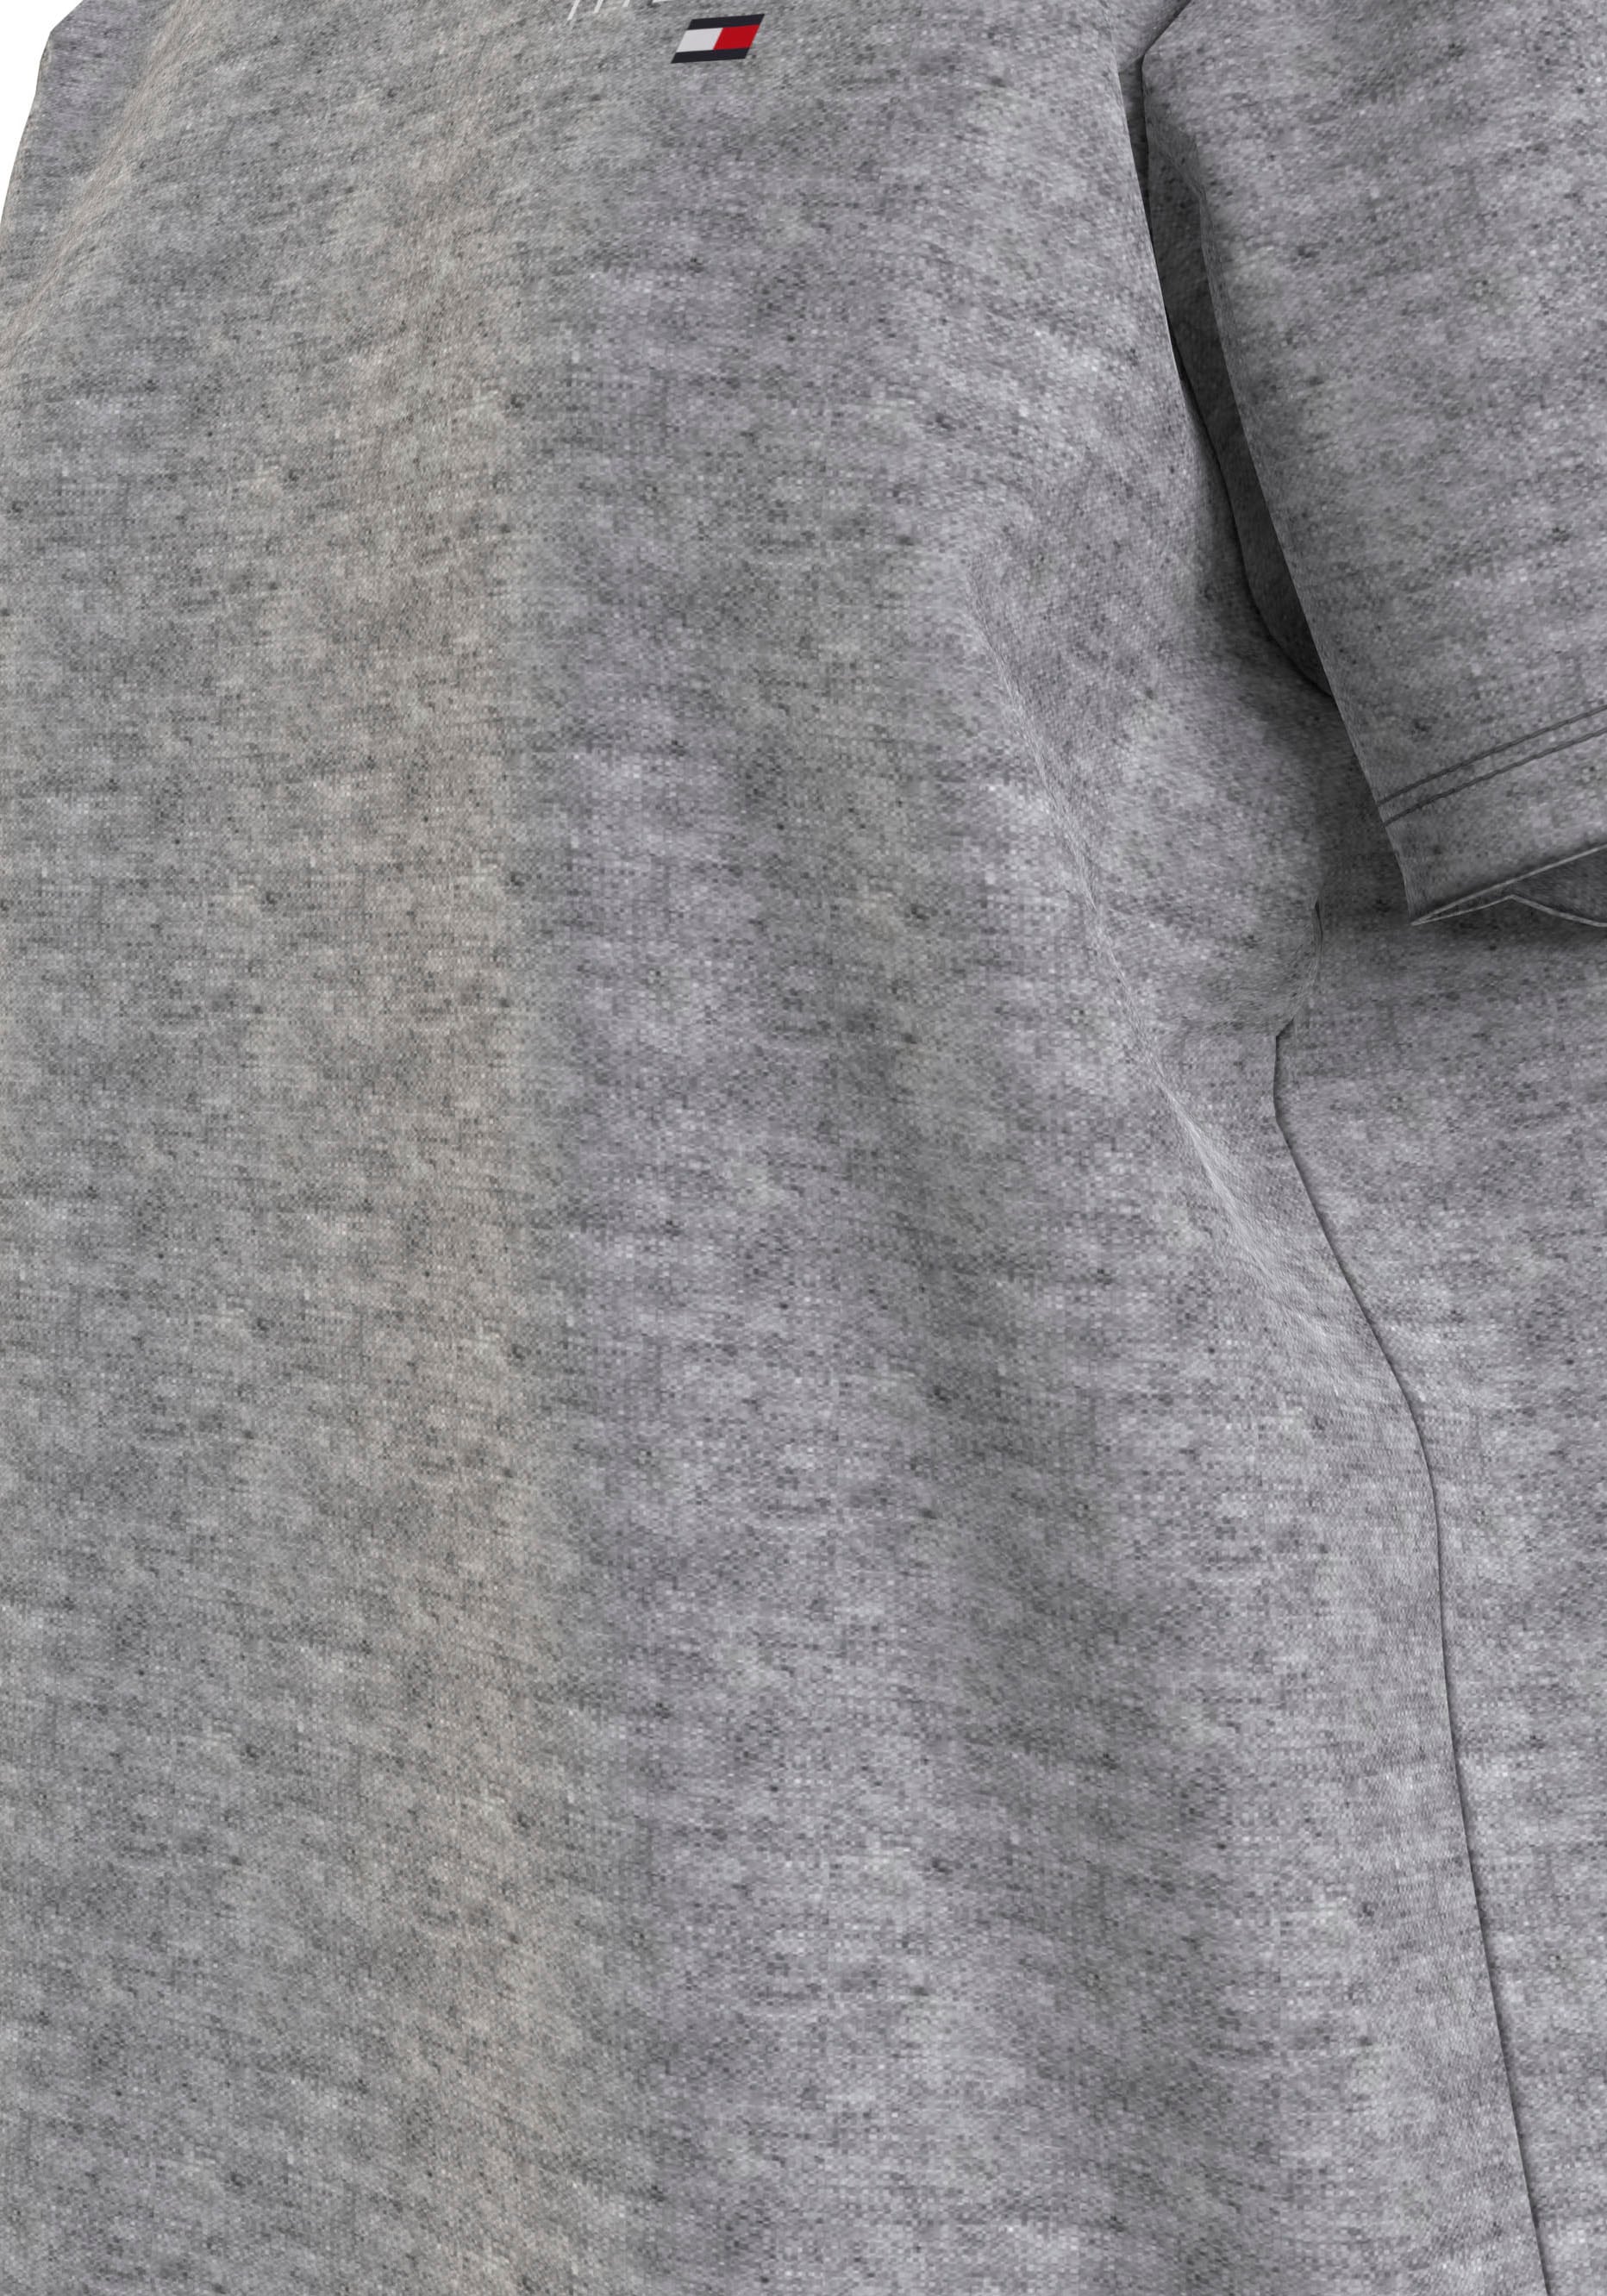 Tommy Hilfiger Underwear Nachthemd »SHORT SLEEVE T-SHIRT DRESS«, mit Tommy Hilfiger Logoaufdruck